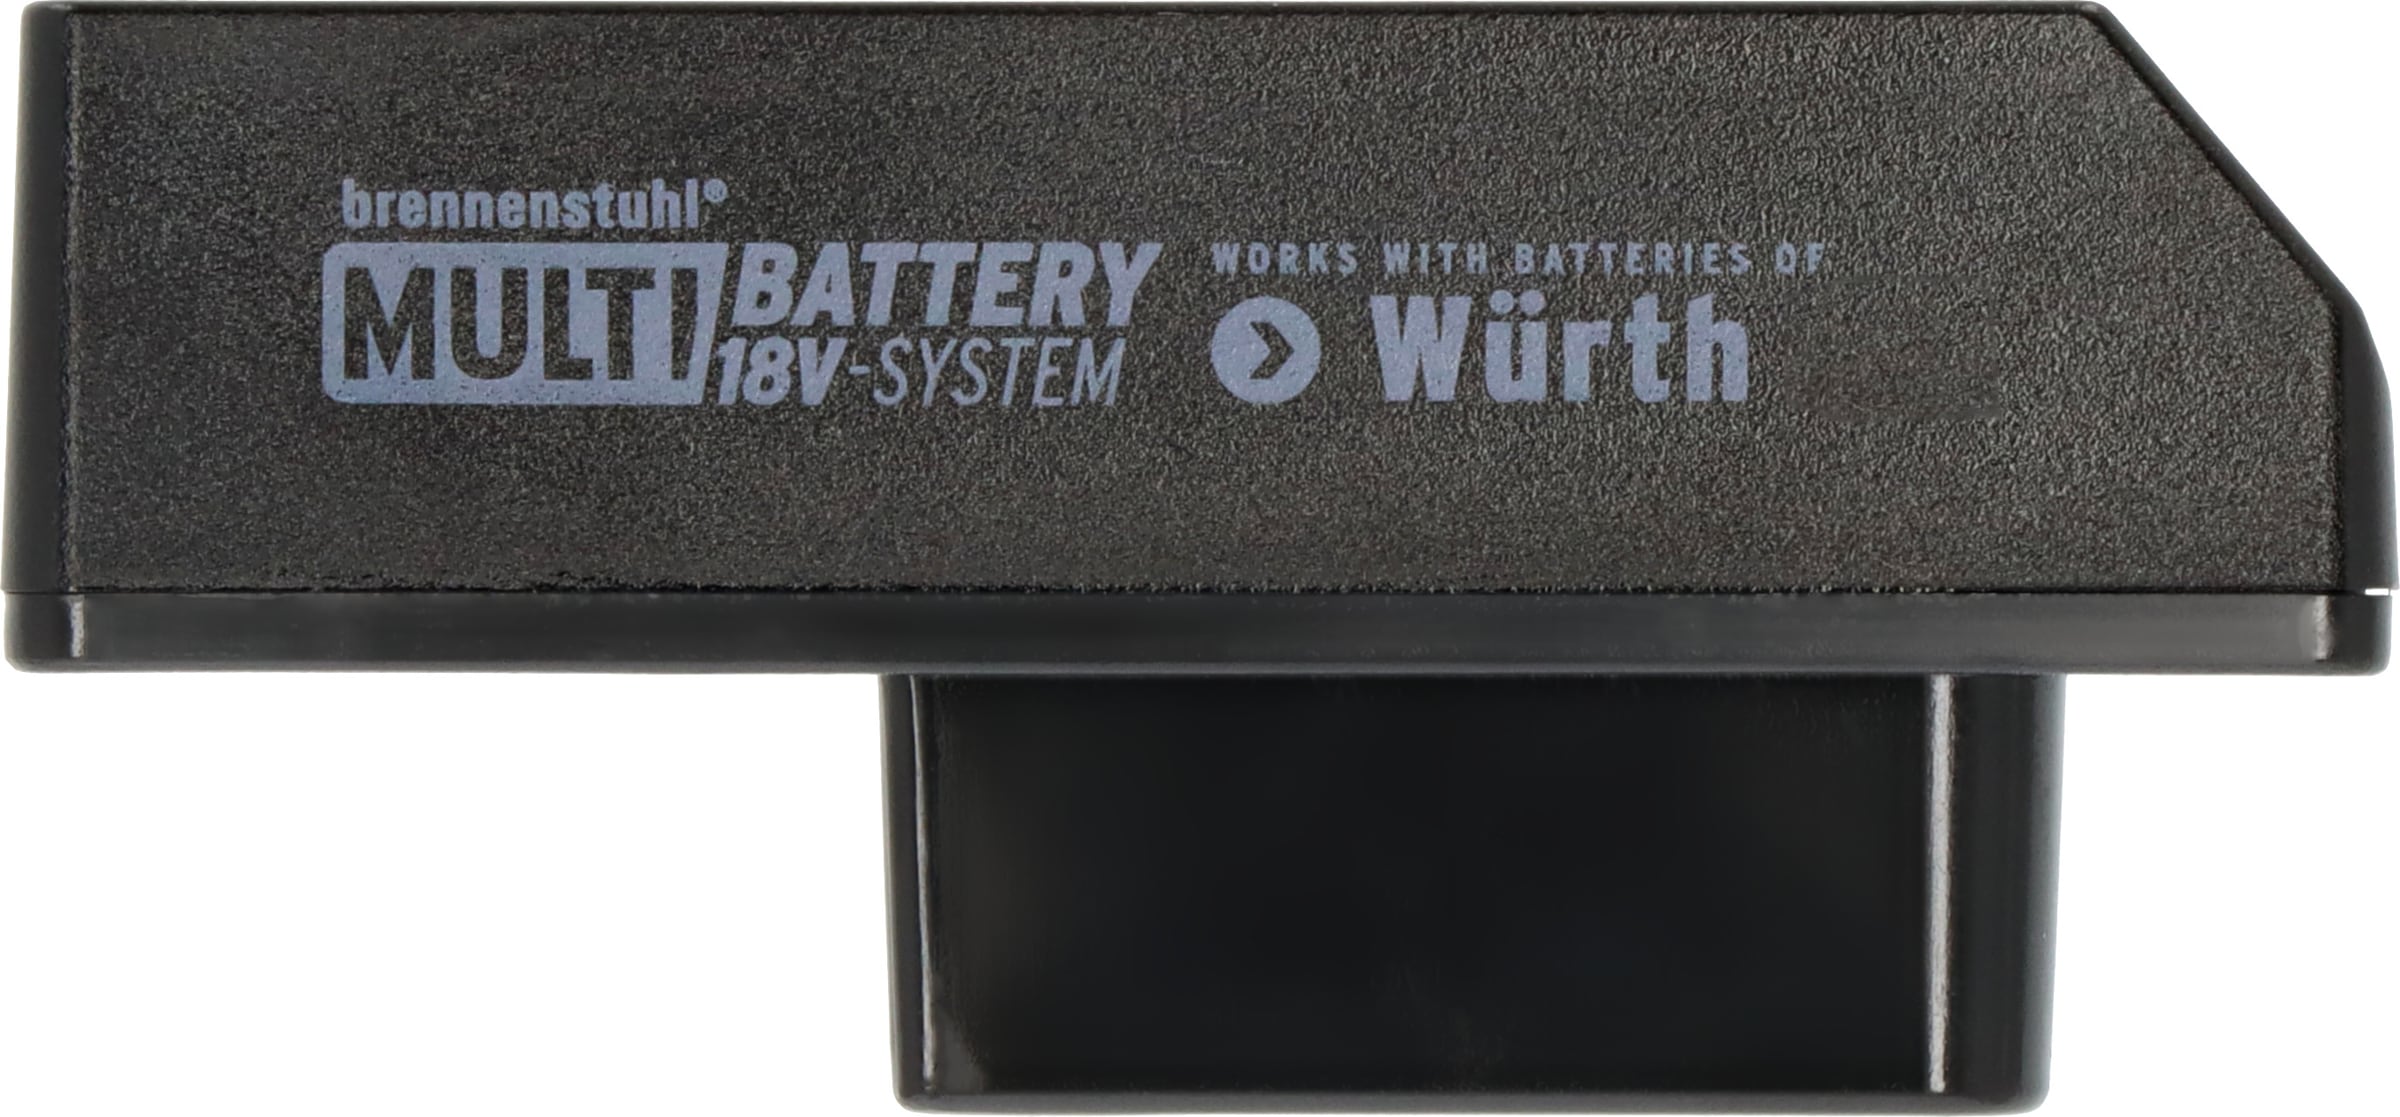 Brennenstuhl Adapter »Würth«, für Baustrahler im Multi Battery 18V System